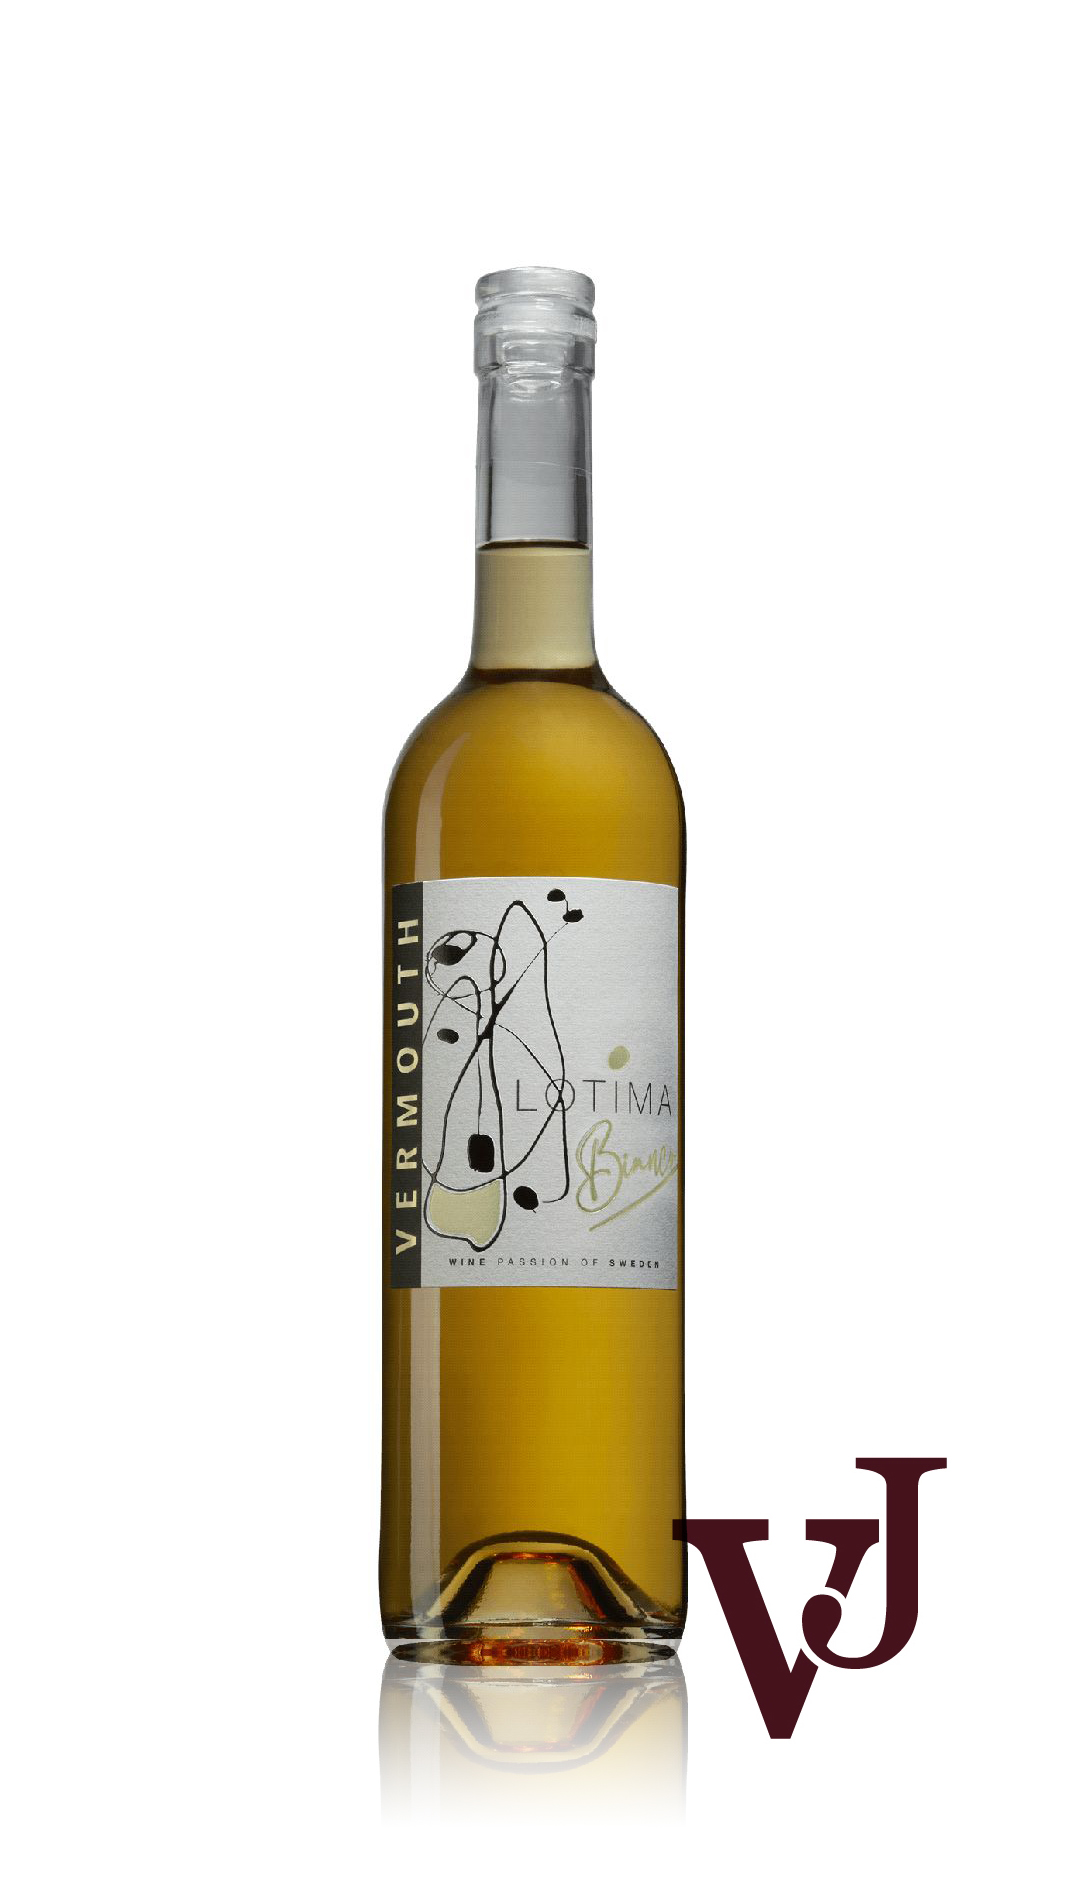 Vermouth - Lotima Vermouth Bianco 2021 artikel nummer 3904501 från producenten Lottenlund Estate från området Sverige